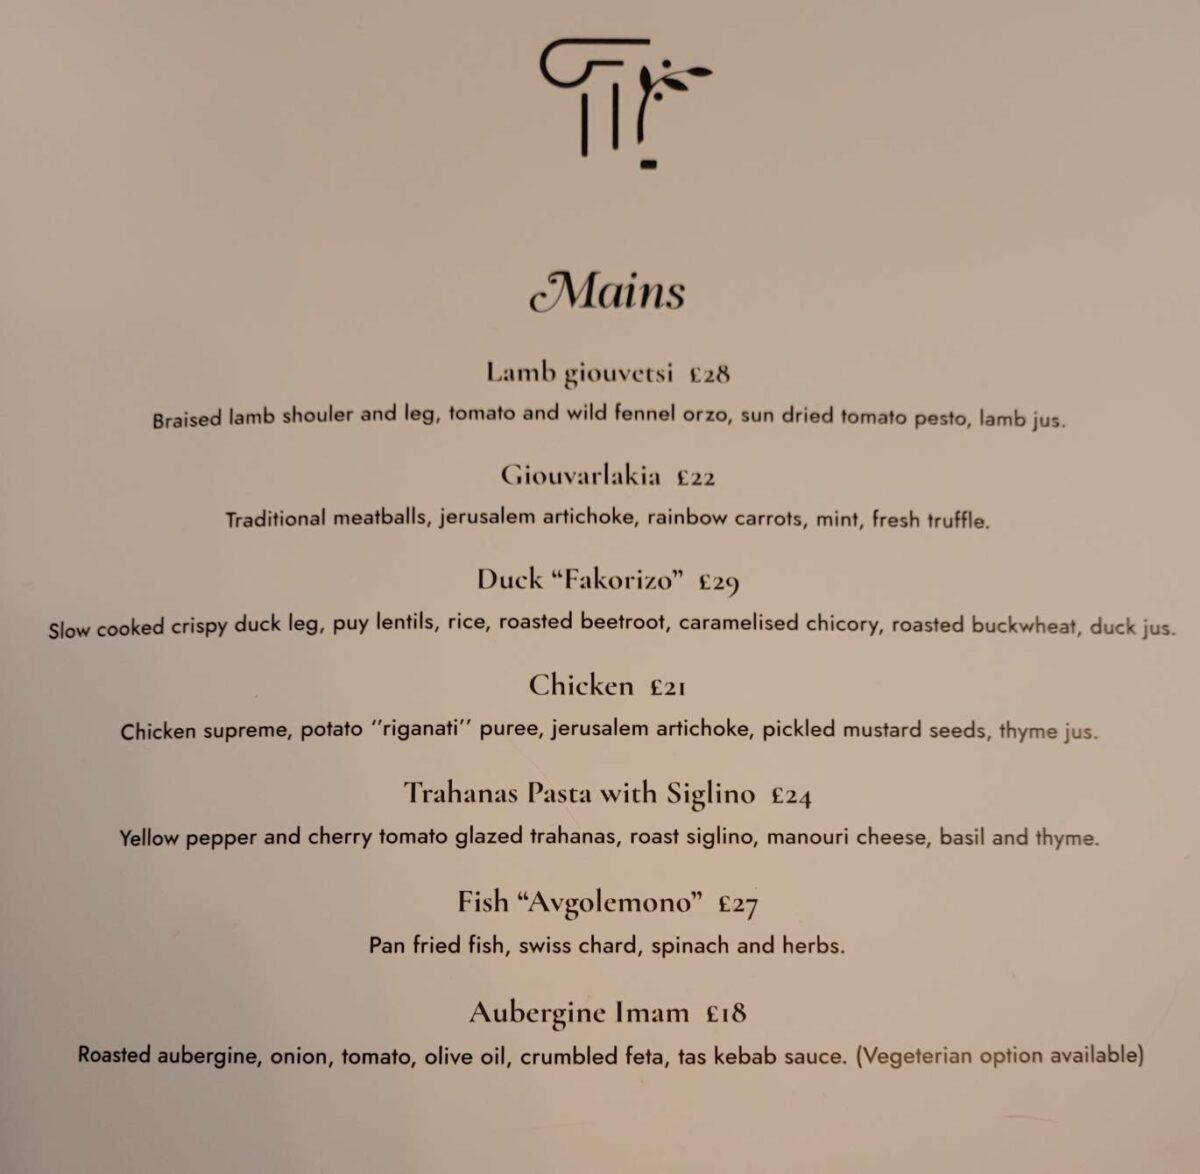 Kuzina Greek restaurant Edinburgh menu 